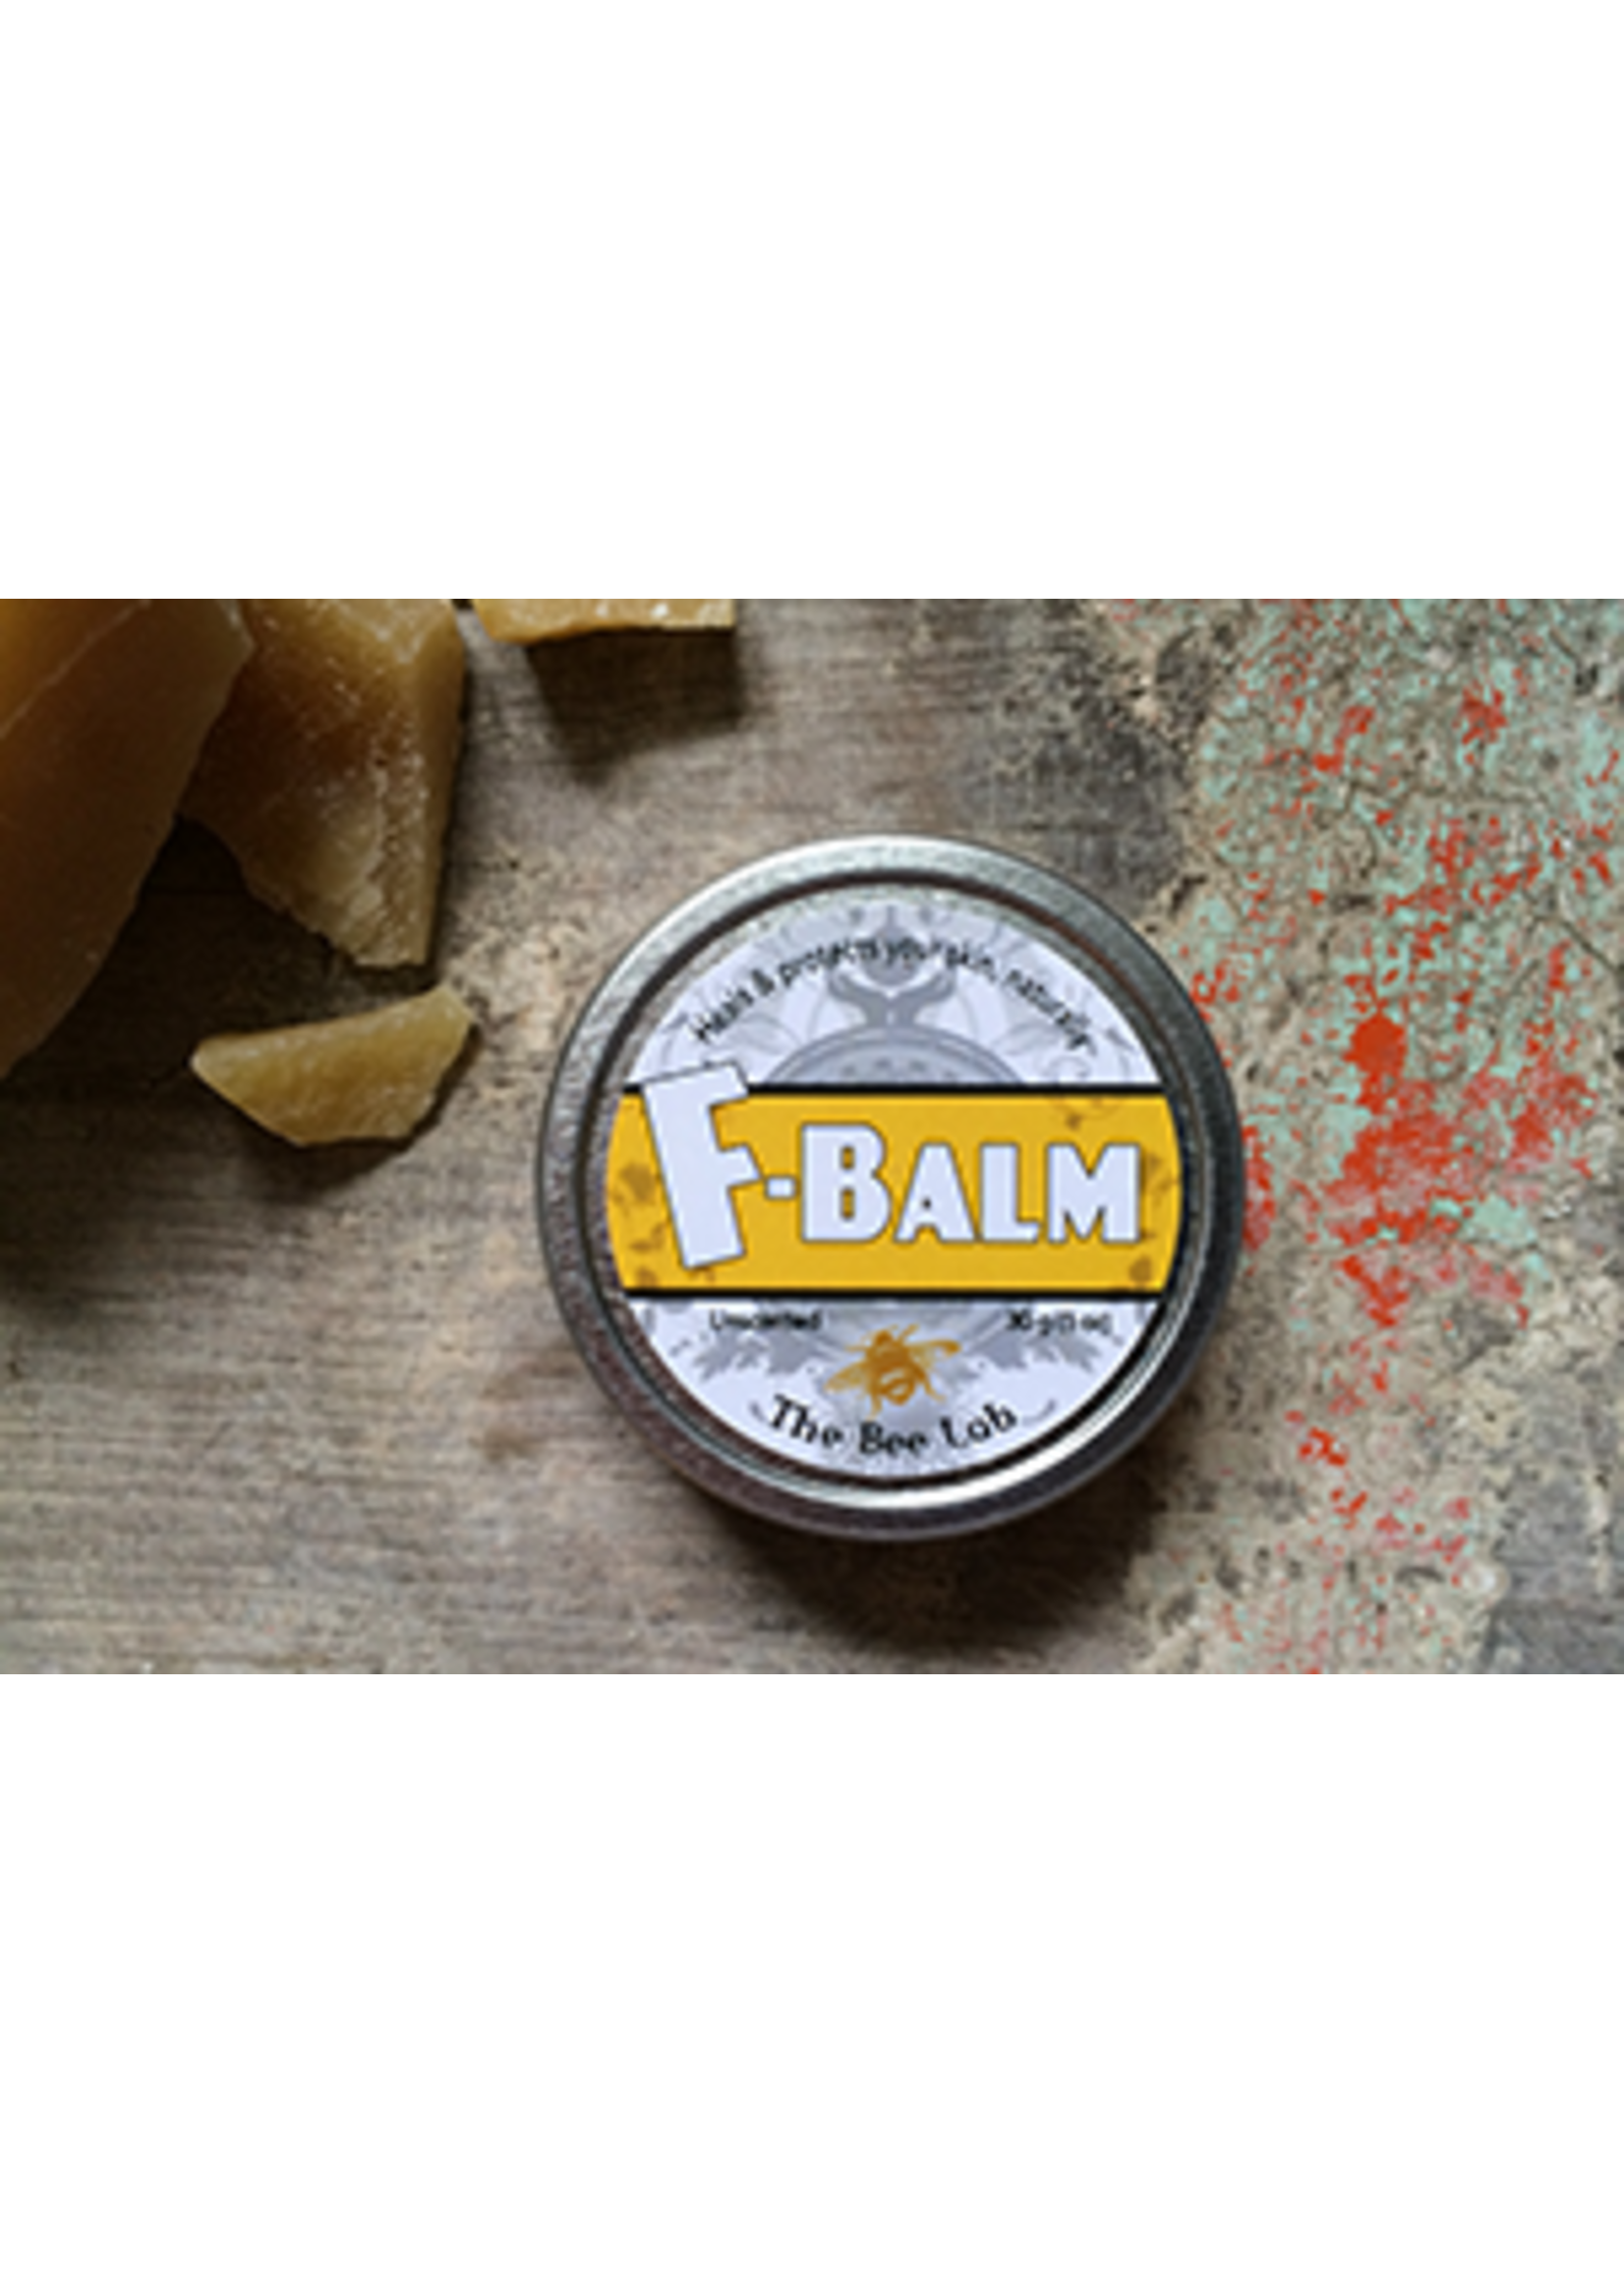 Baume Bee Lab F-Balm 15 g - Non parfumé